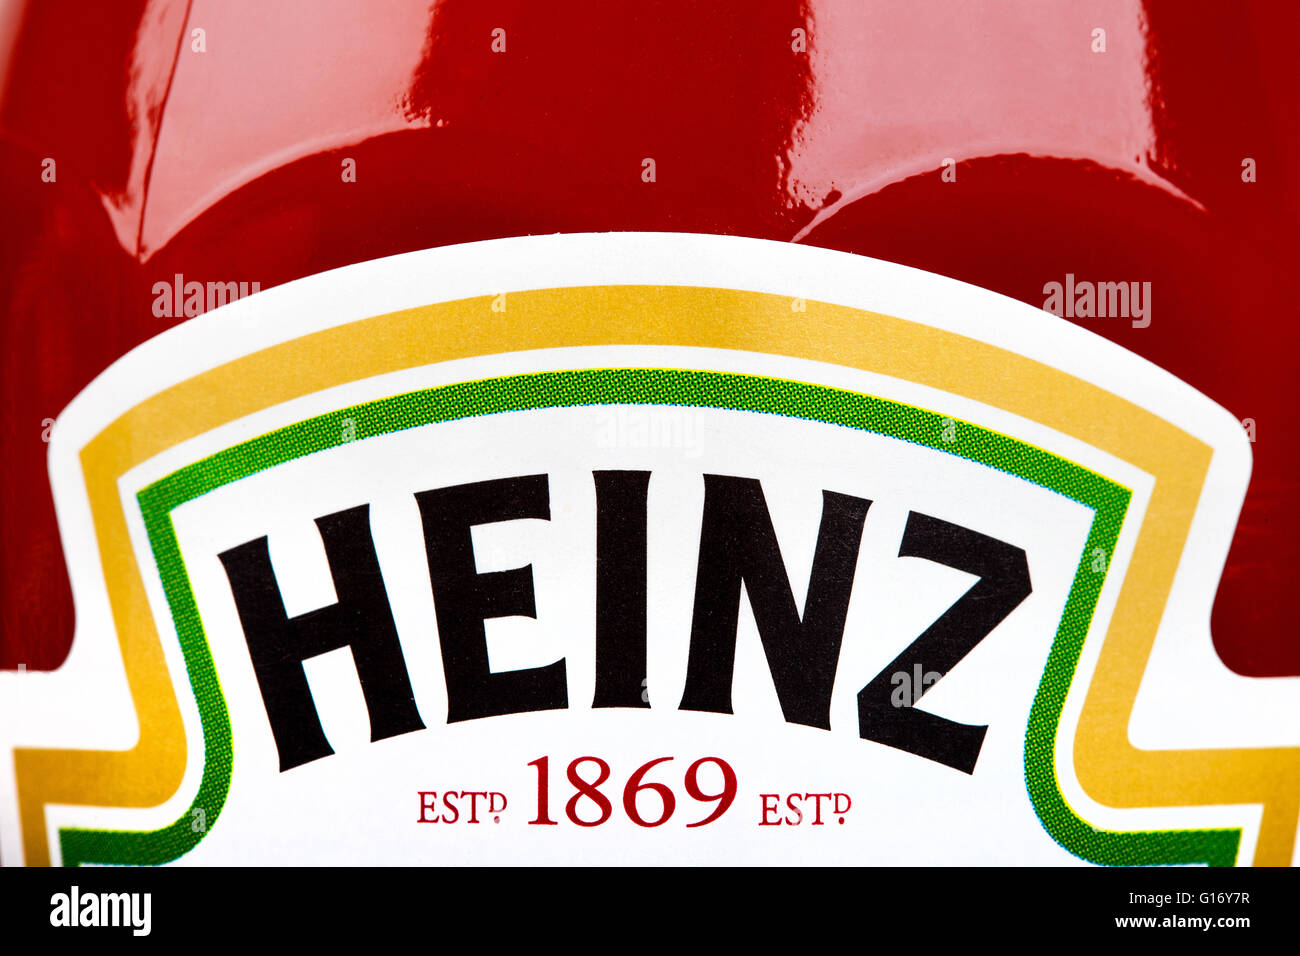 Londres, Reino Unido - 6 de mayo de 2016: un primer plano de la Heinz logotipo en un tarro de Ketchup Heinz, el 6 de mayo de 2016. Foto de stock